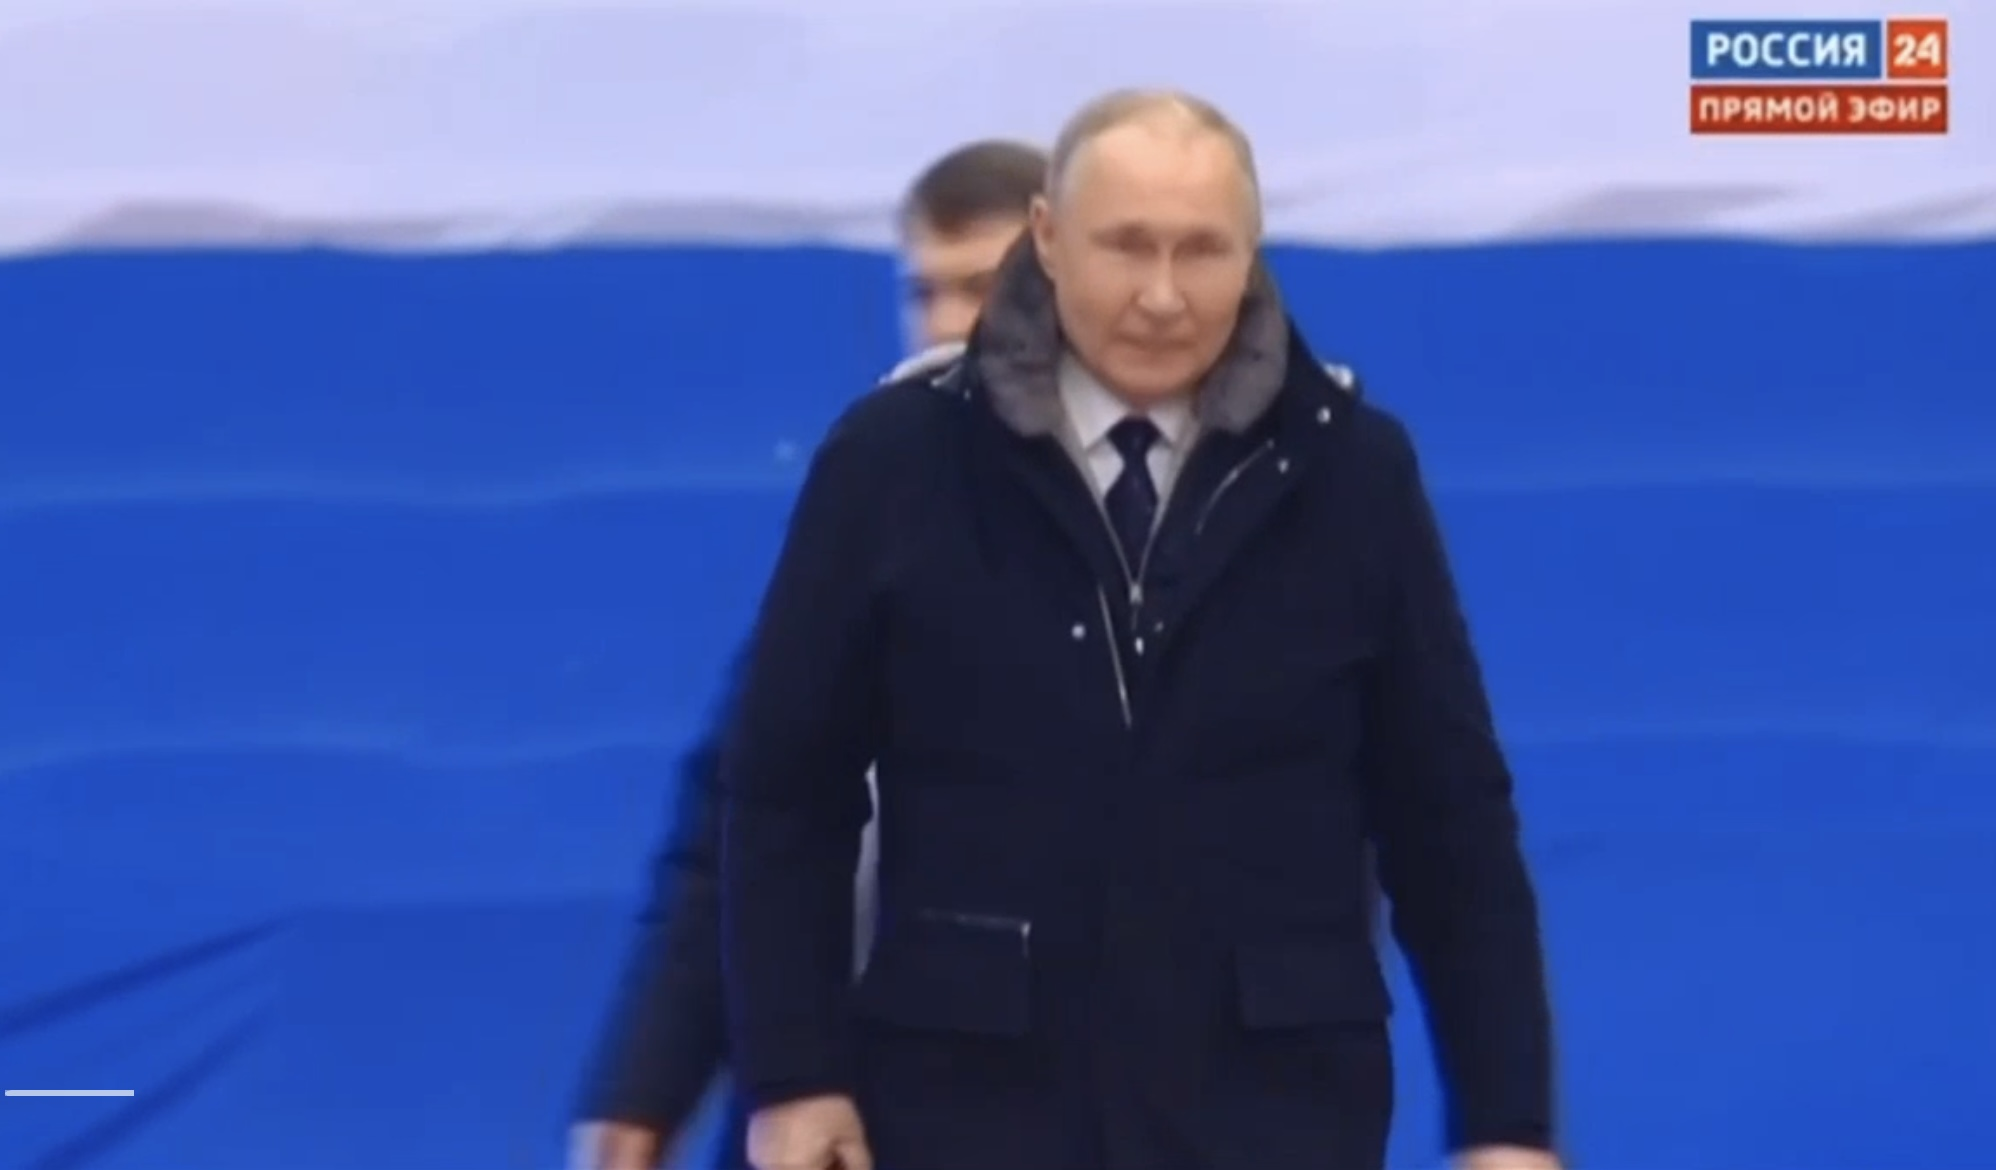 Верх цинізму: в "Лужниках" перед виступом Путіна заспівали українською мовою про "порятунок" Маріуполя від "нацистів"